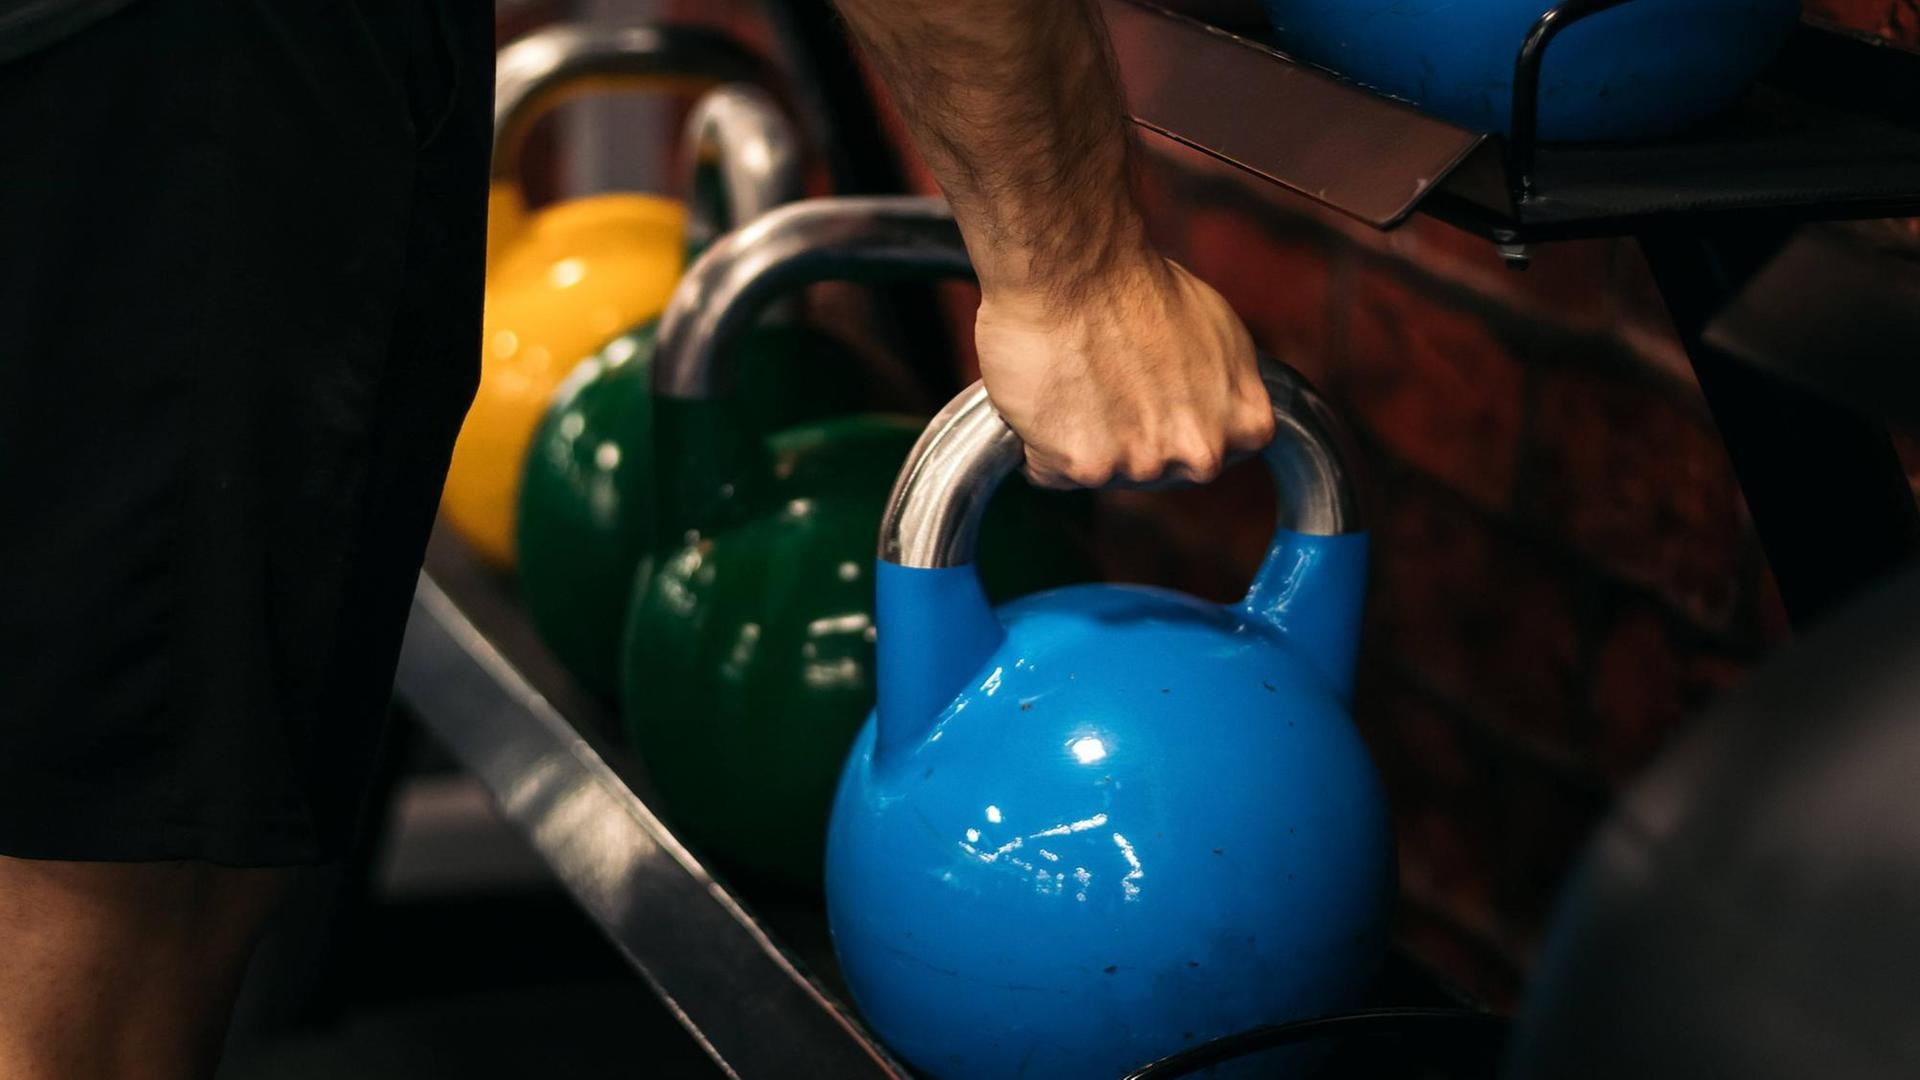 Ein Mann im Fitnessstudio greift ein Gewicht.